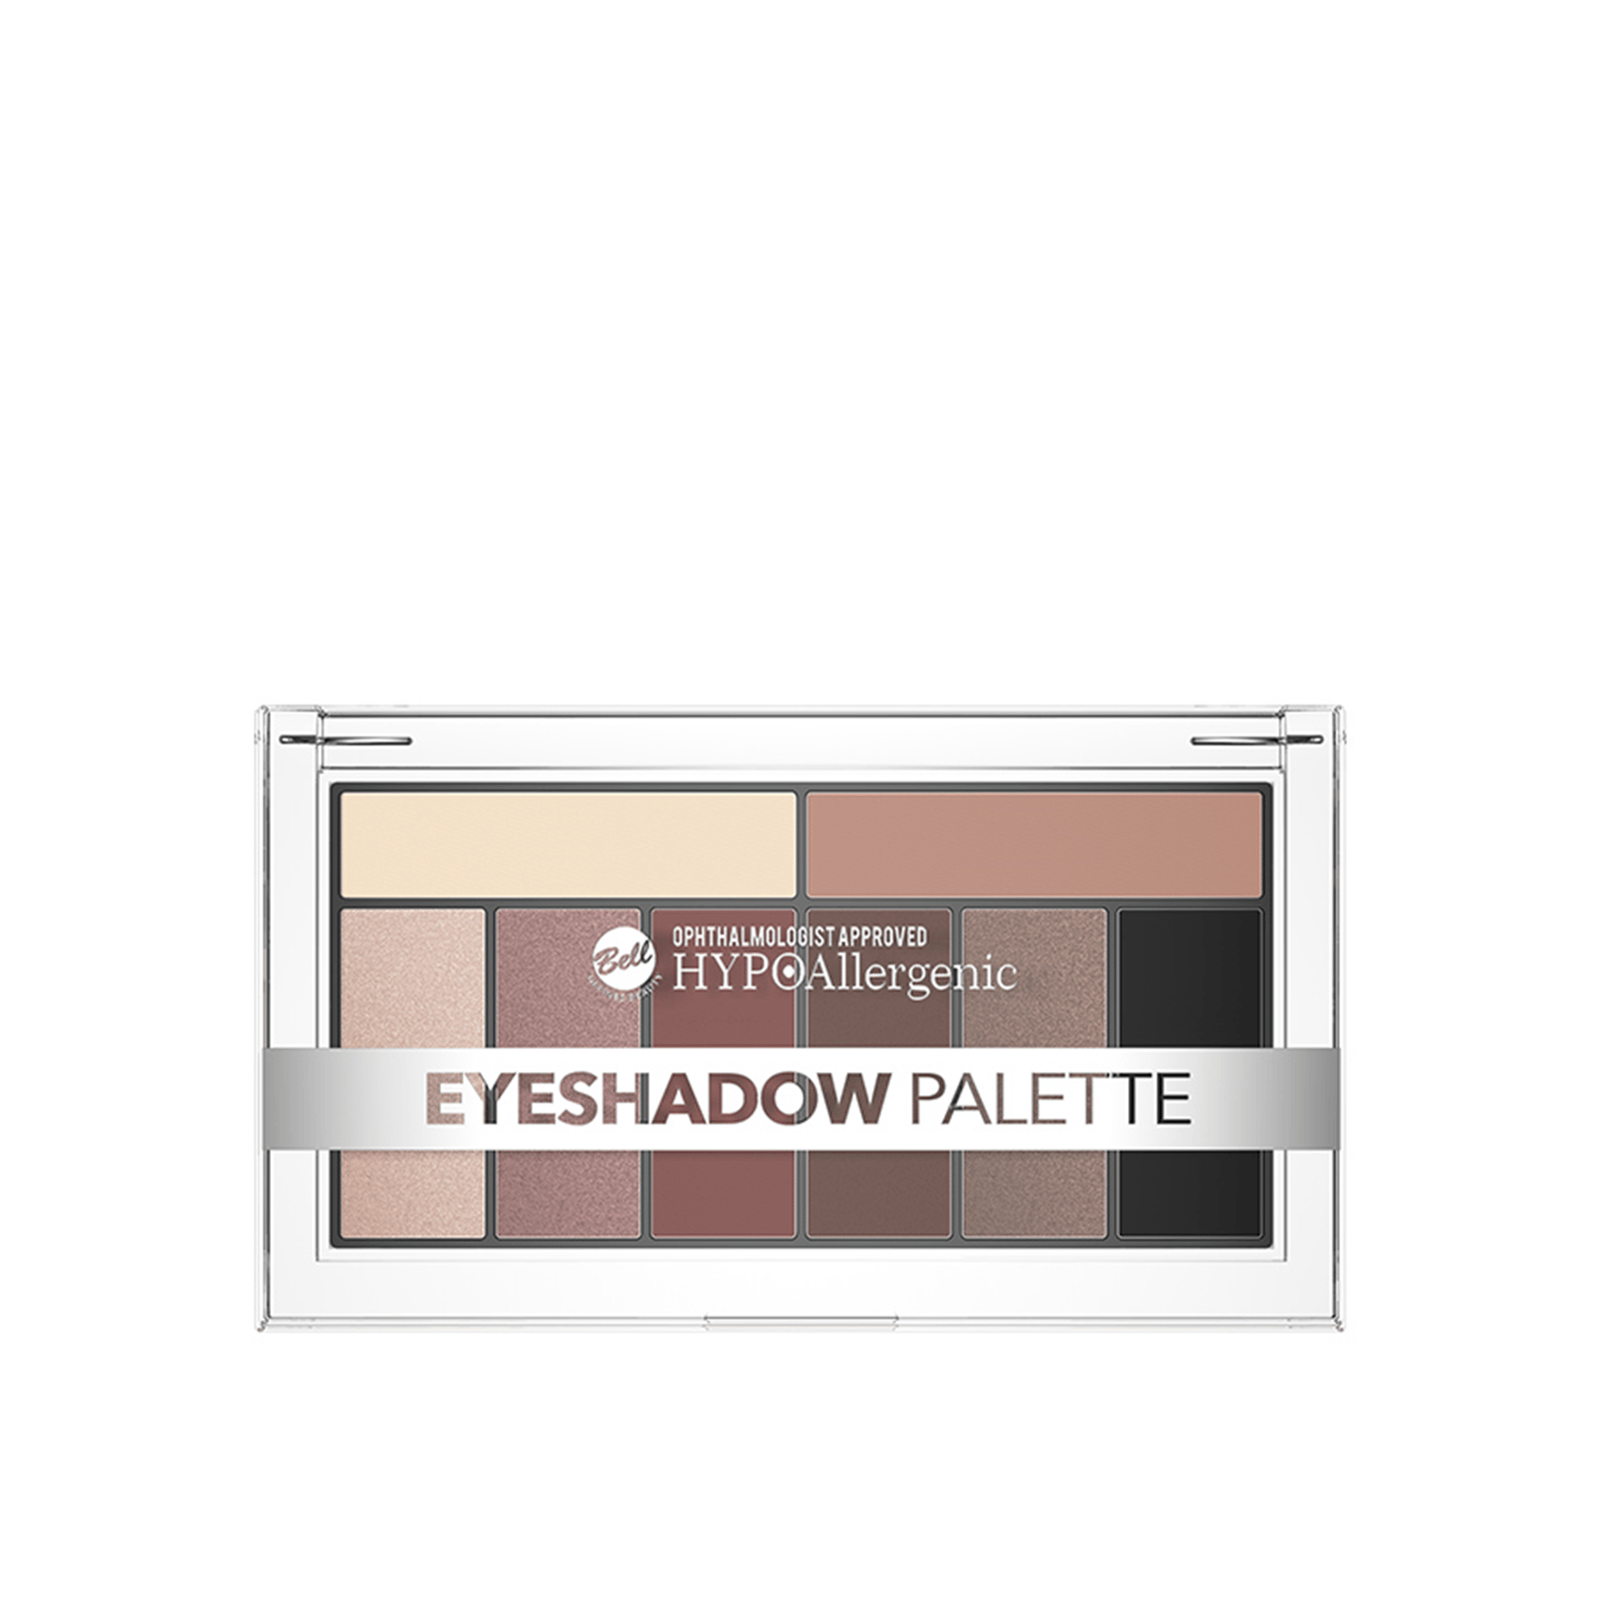 Bell HYPOAllergenic Eyeshadow Palette 01 17g (0.5oz)